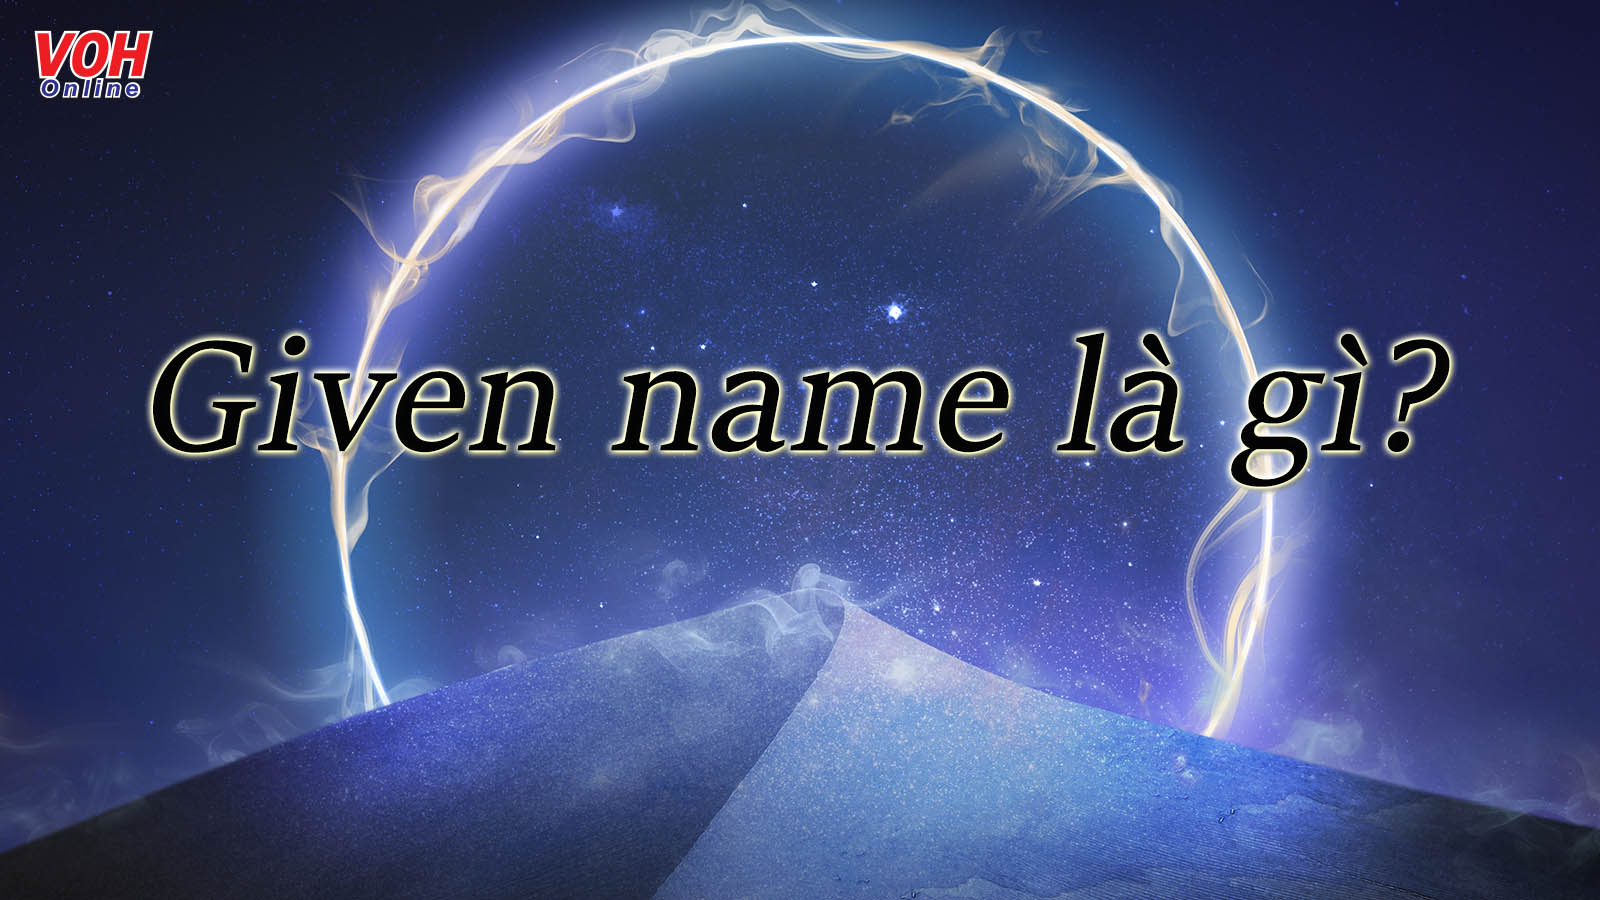 Given name là gì? Cùng khám phá những cách đặt tên bằng tiếng Anh thú vị